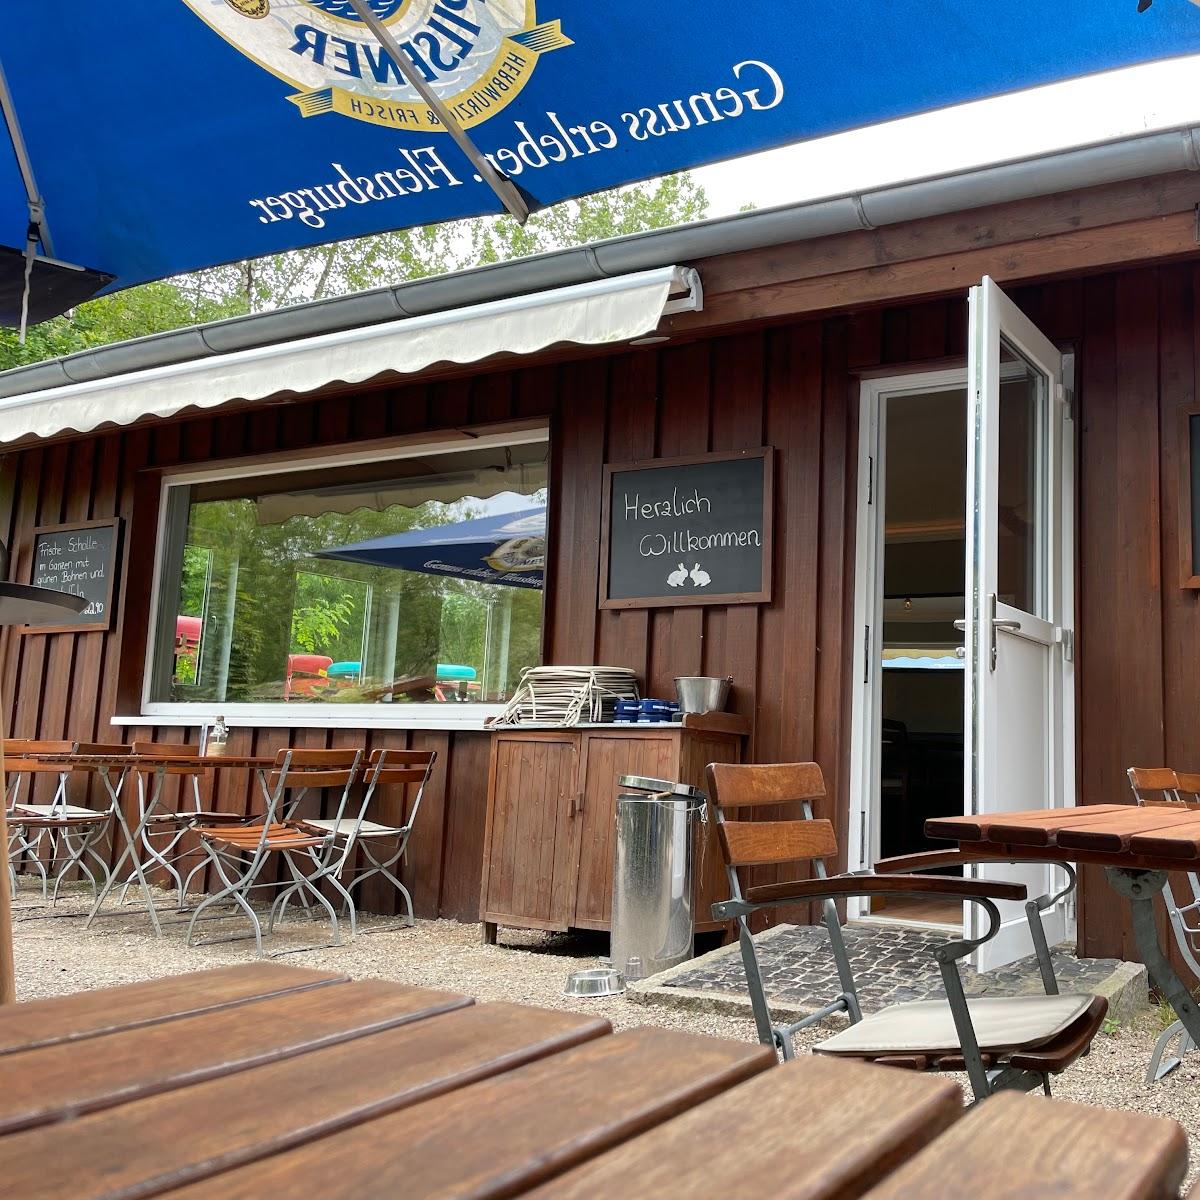 Restaurant "Bootshaus am Kirchsee" in Preetz